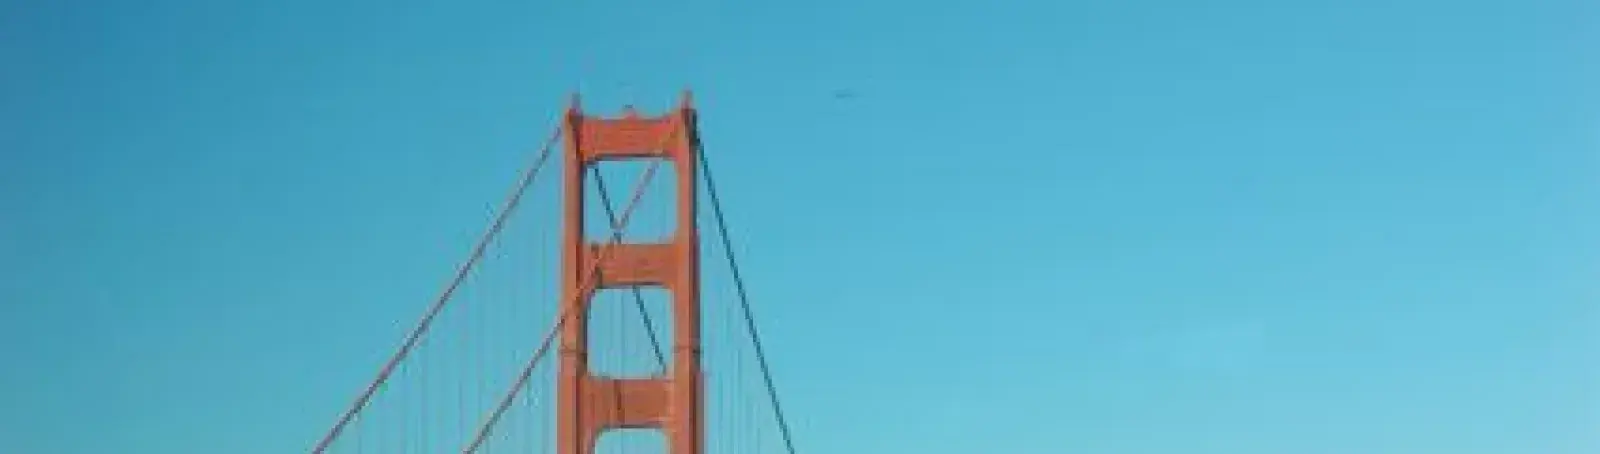 Golden Gate-híd